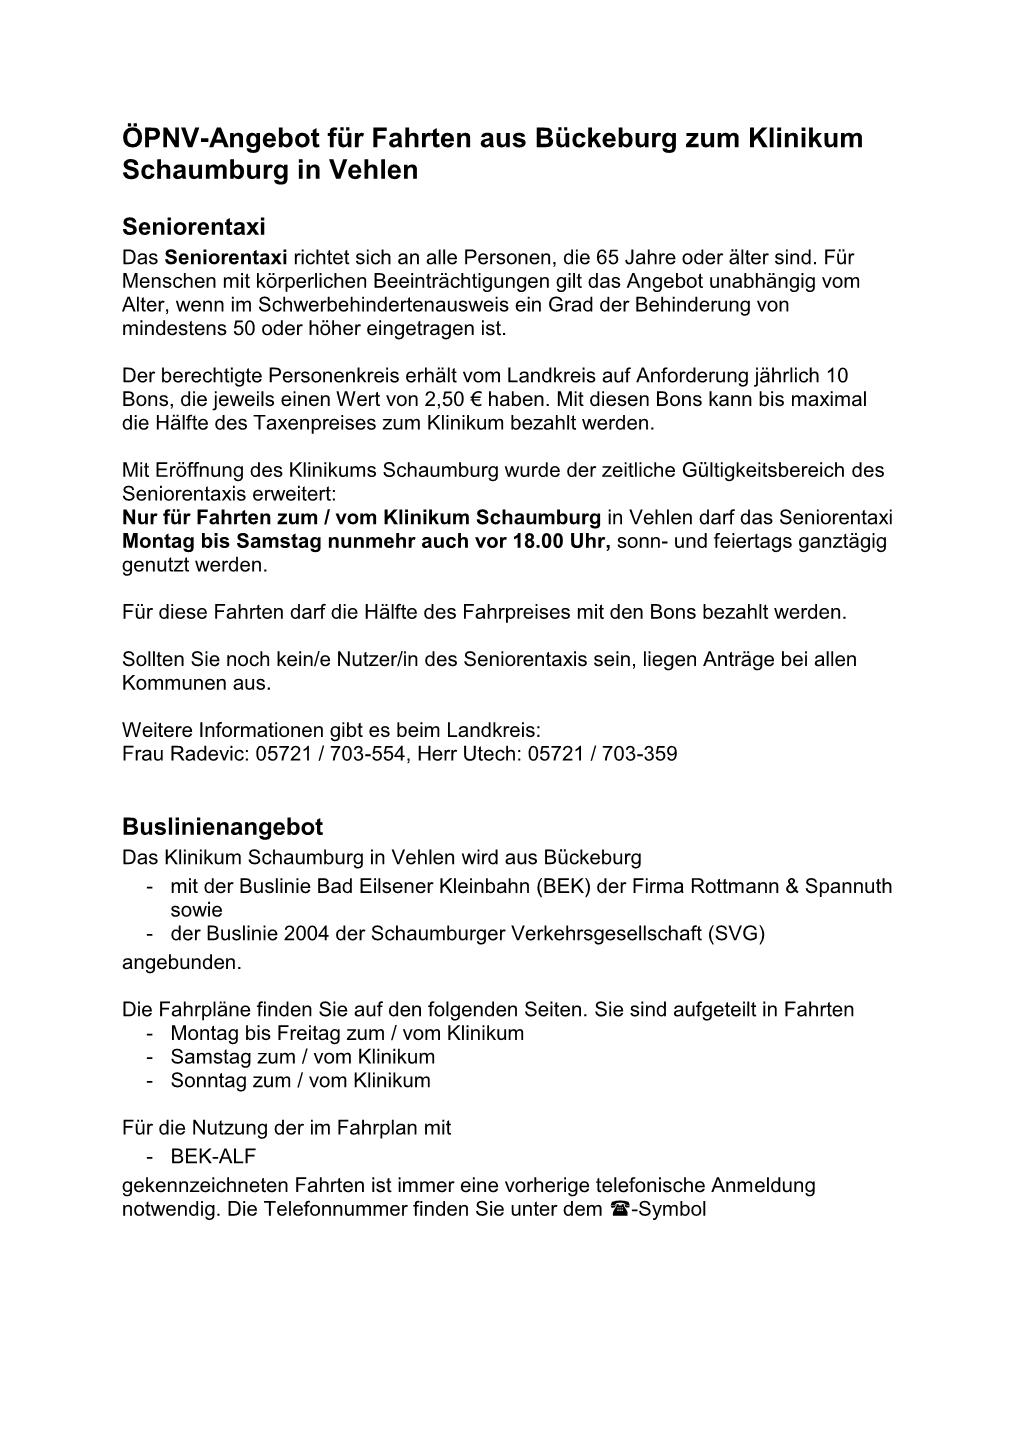 ÖPNV-Angebot Für Fahrten Aus Bückeburg Zum Klinikum Schaumburg in Vehlen